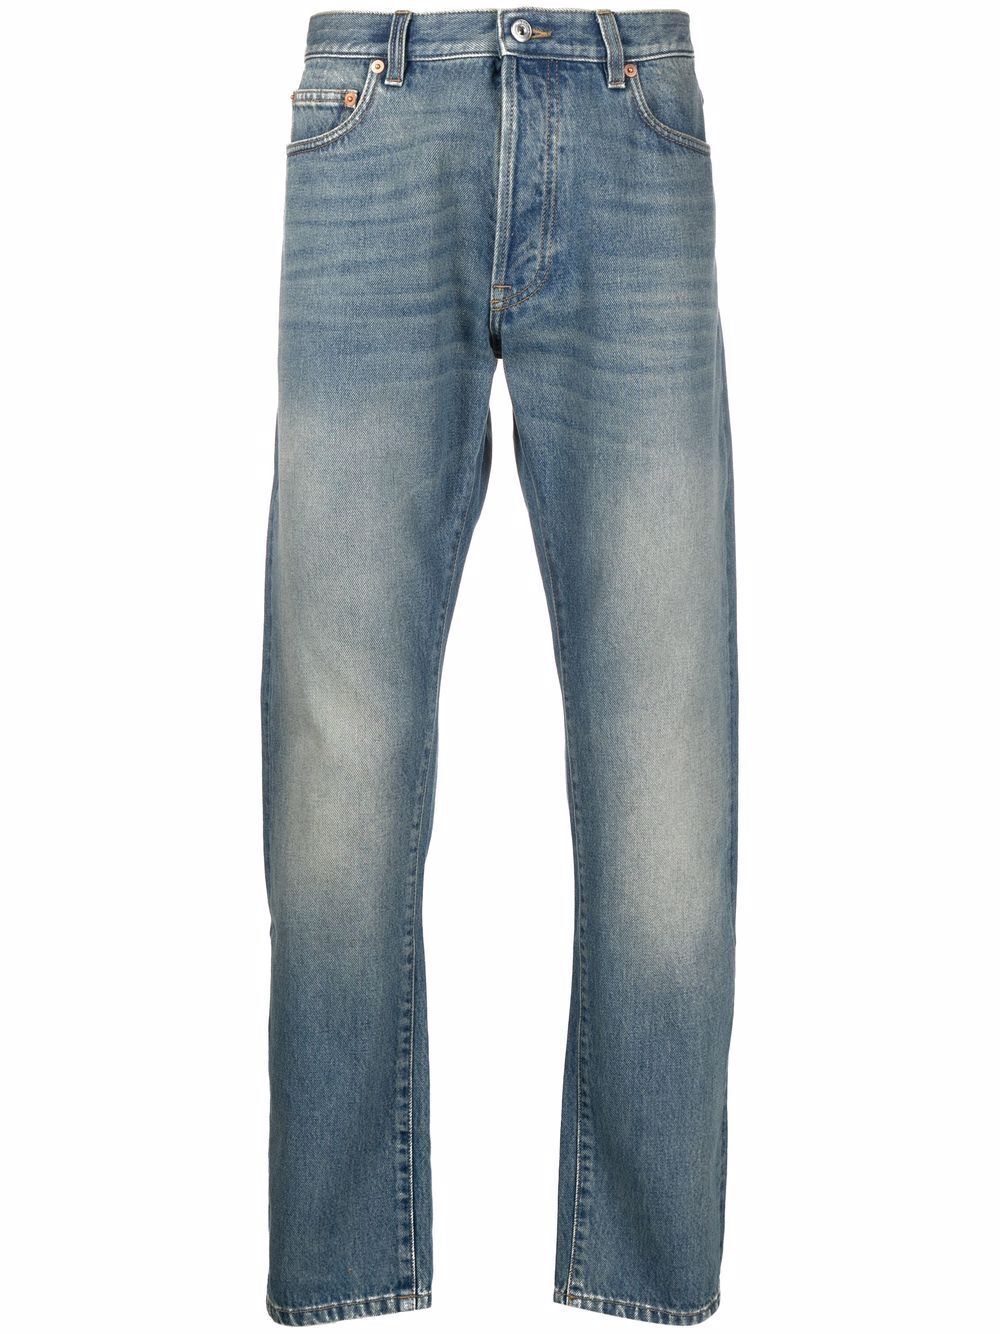 Stonewashed Jeans